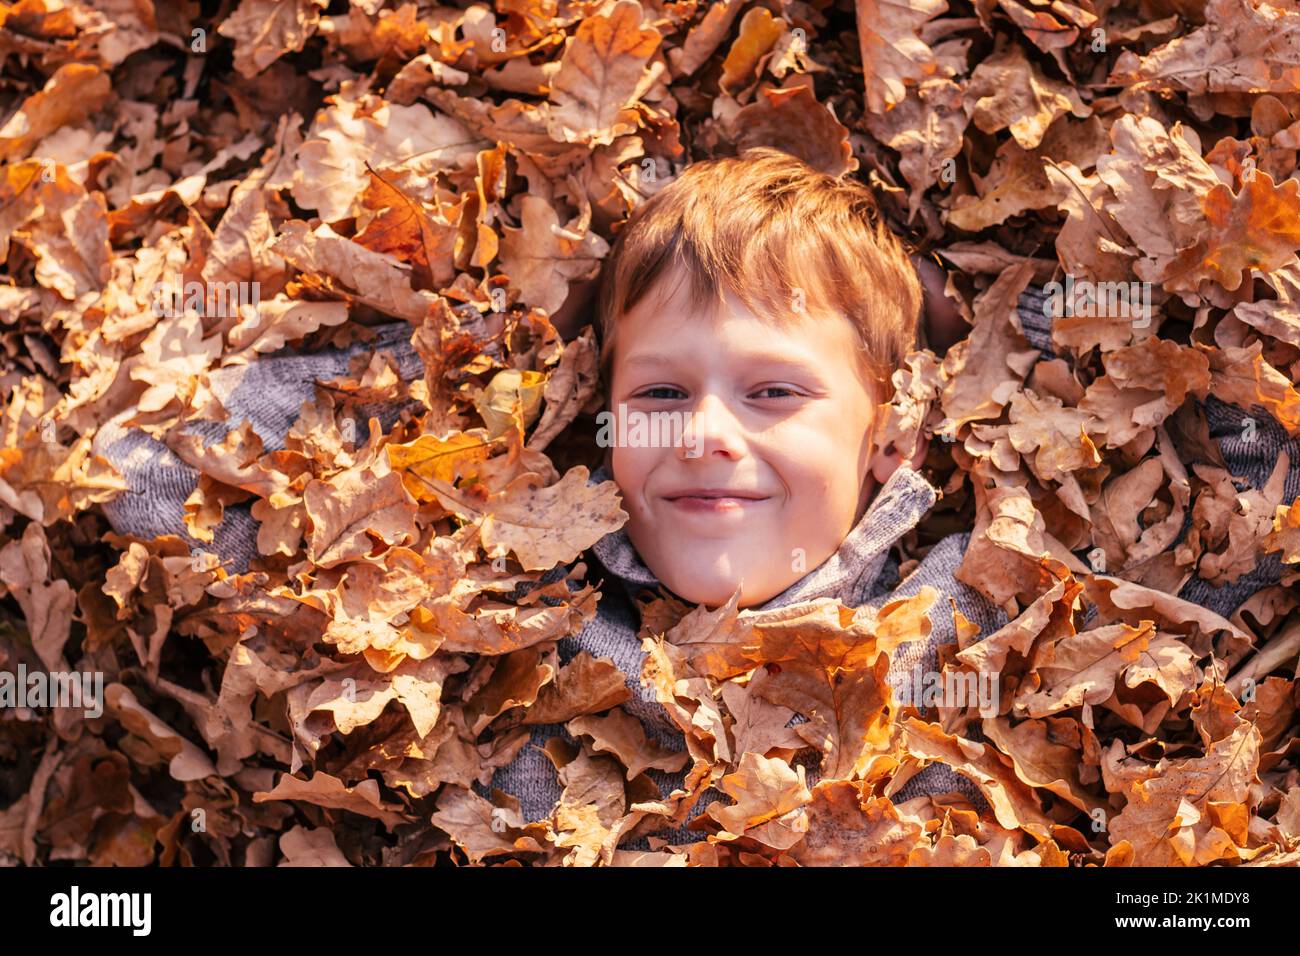 Ragazzo di 9-10 anni si trova sepolto in foglie di rovere giallo autunno nel parco in raggi di sole e sorrisi. Bambino in maglione grigio gioca e si diverte Foto Stock